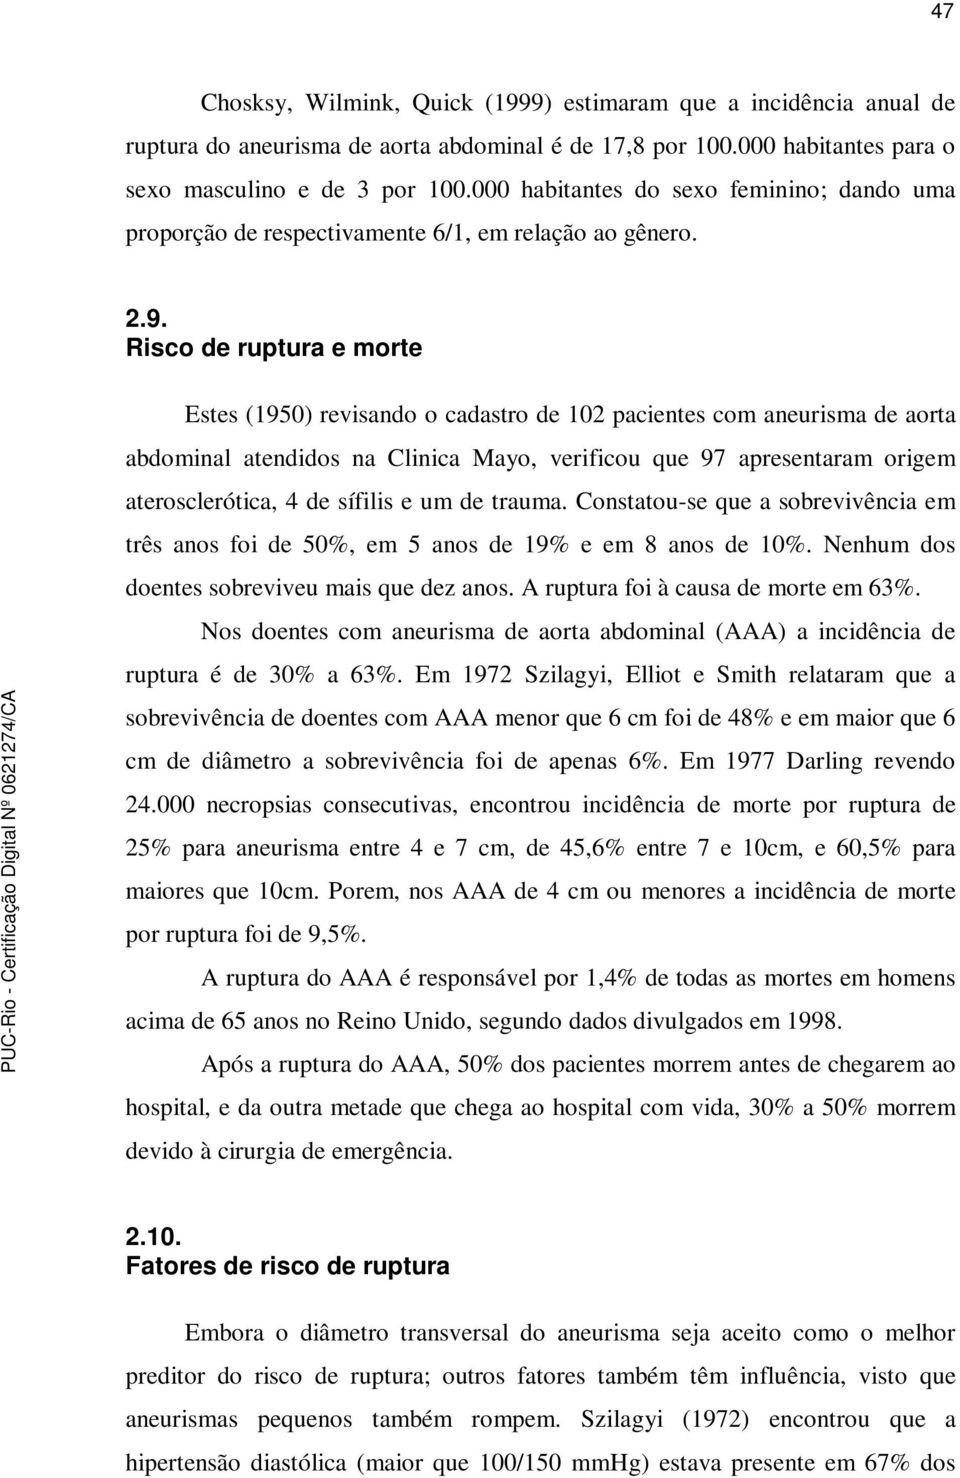 Risco de ruptura e morte Estes (1950) revisando o cadastro de 102 pacientes com aneurisma de aorta abdominal atendidos na Clinica Mayo, verificou que 97 apresentaram origem aterosclerótica, 4 de